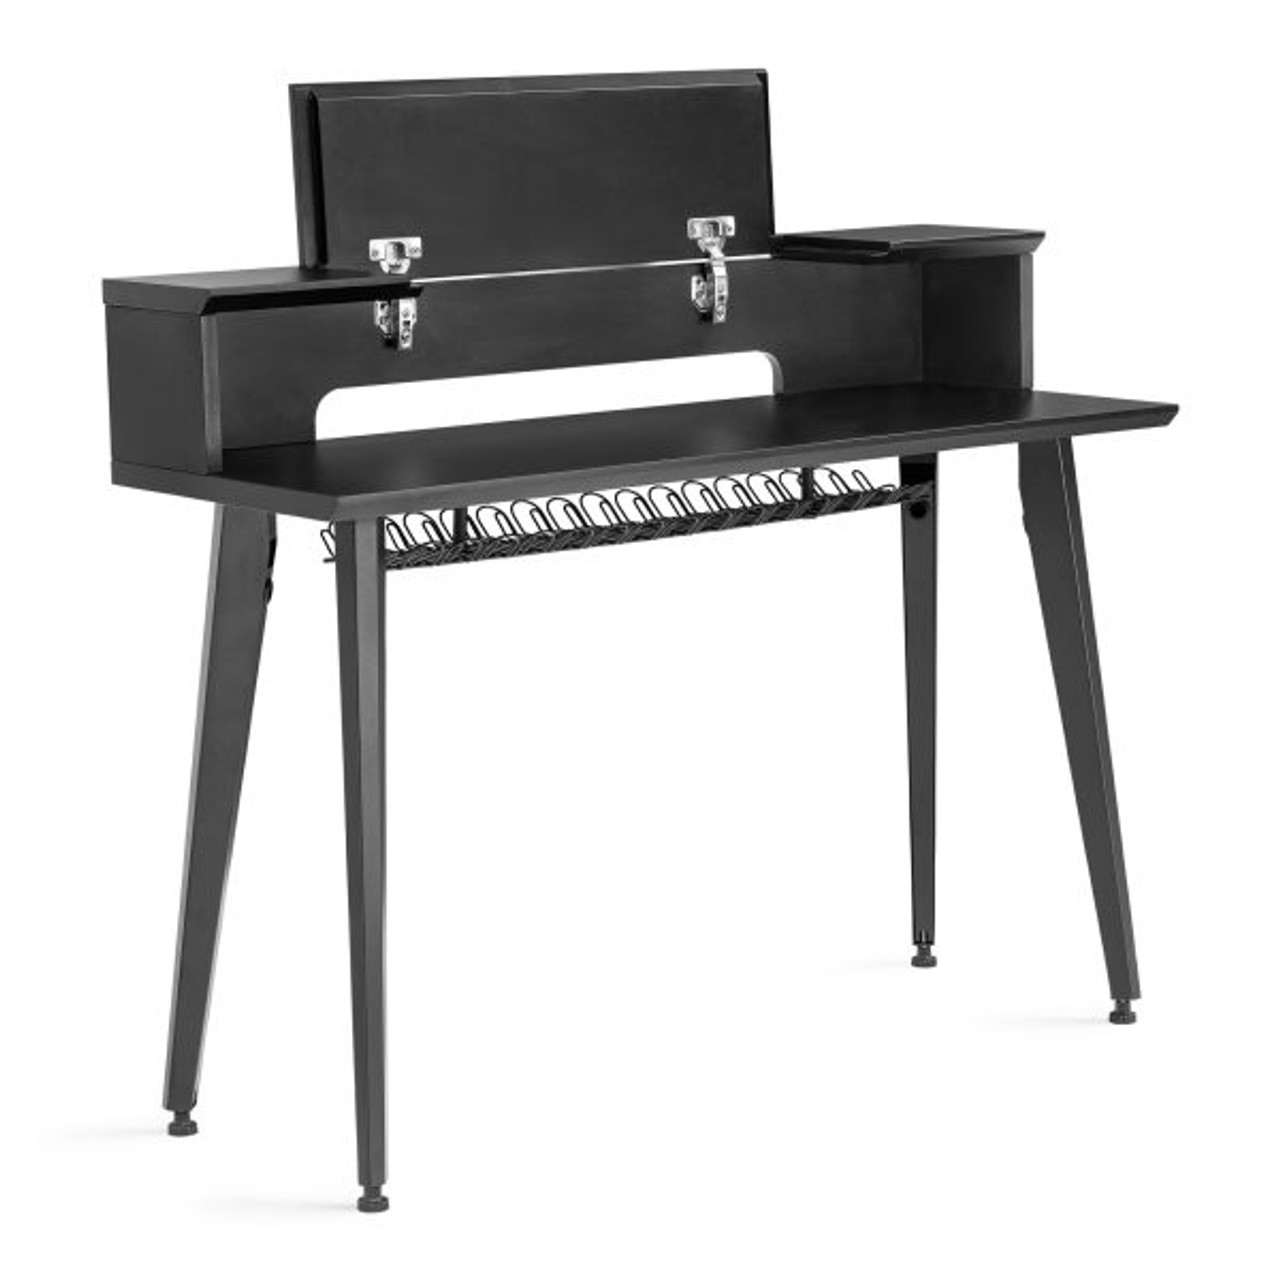 Gator GFW-ELITEKEYTBL61-BLK Elite Series Keyboard Furniture